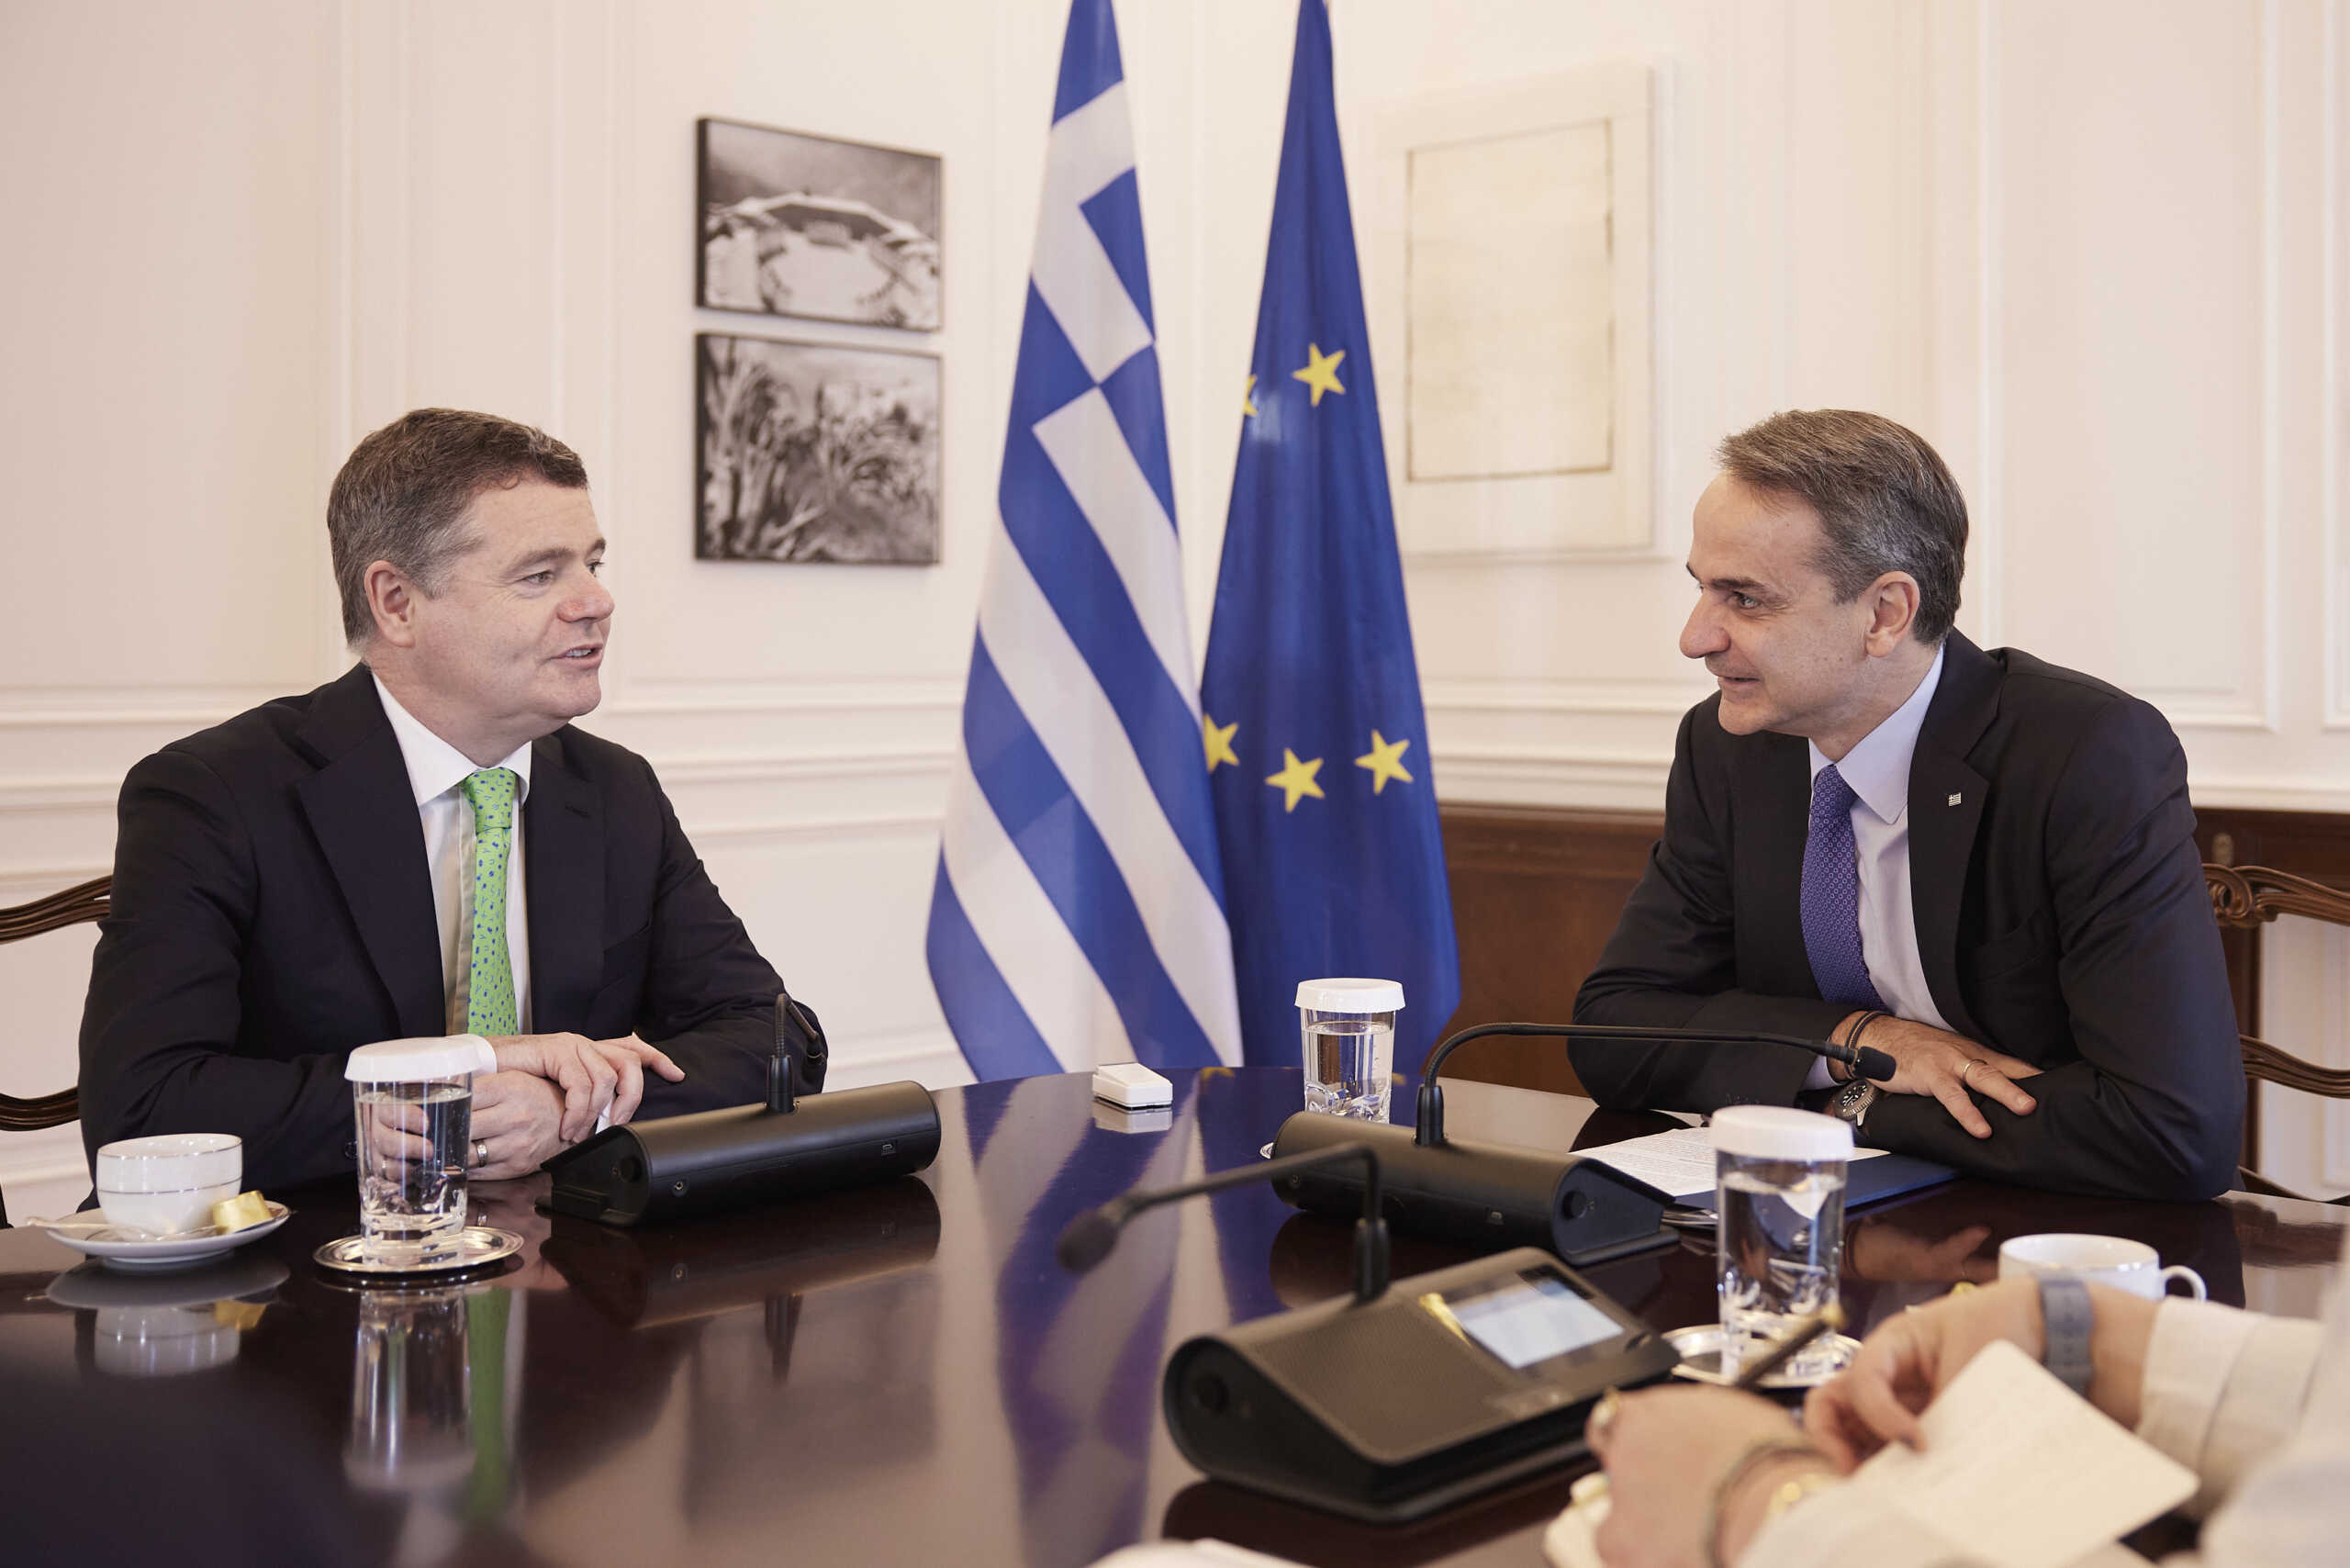 Πρόεδρος Eurogroup σε Κυριάκο Μητσοτάκη: Είμαι εδώ για να υπογραμμίσω την τεράστια πρόοδο στην ελληνική οικονομία